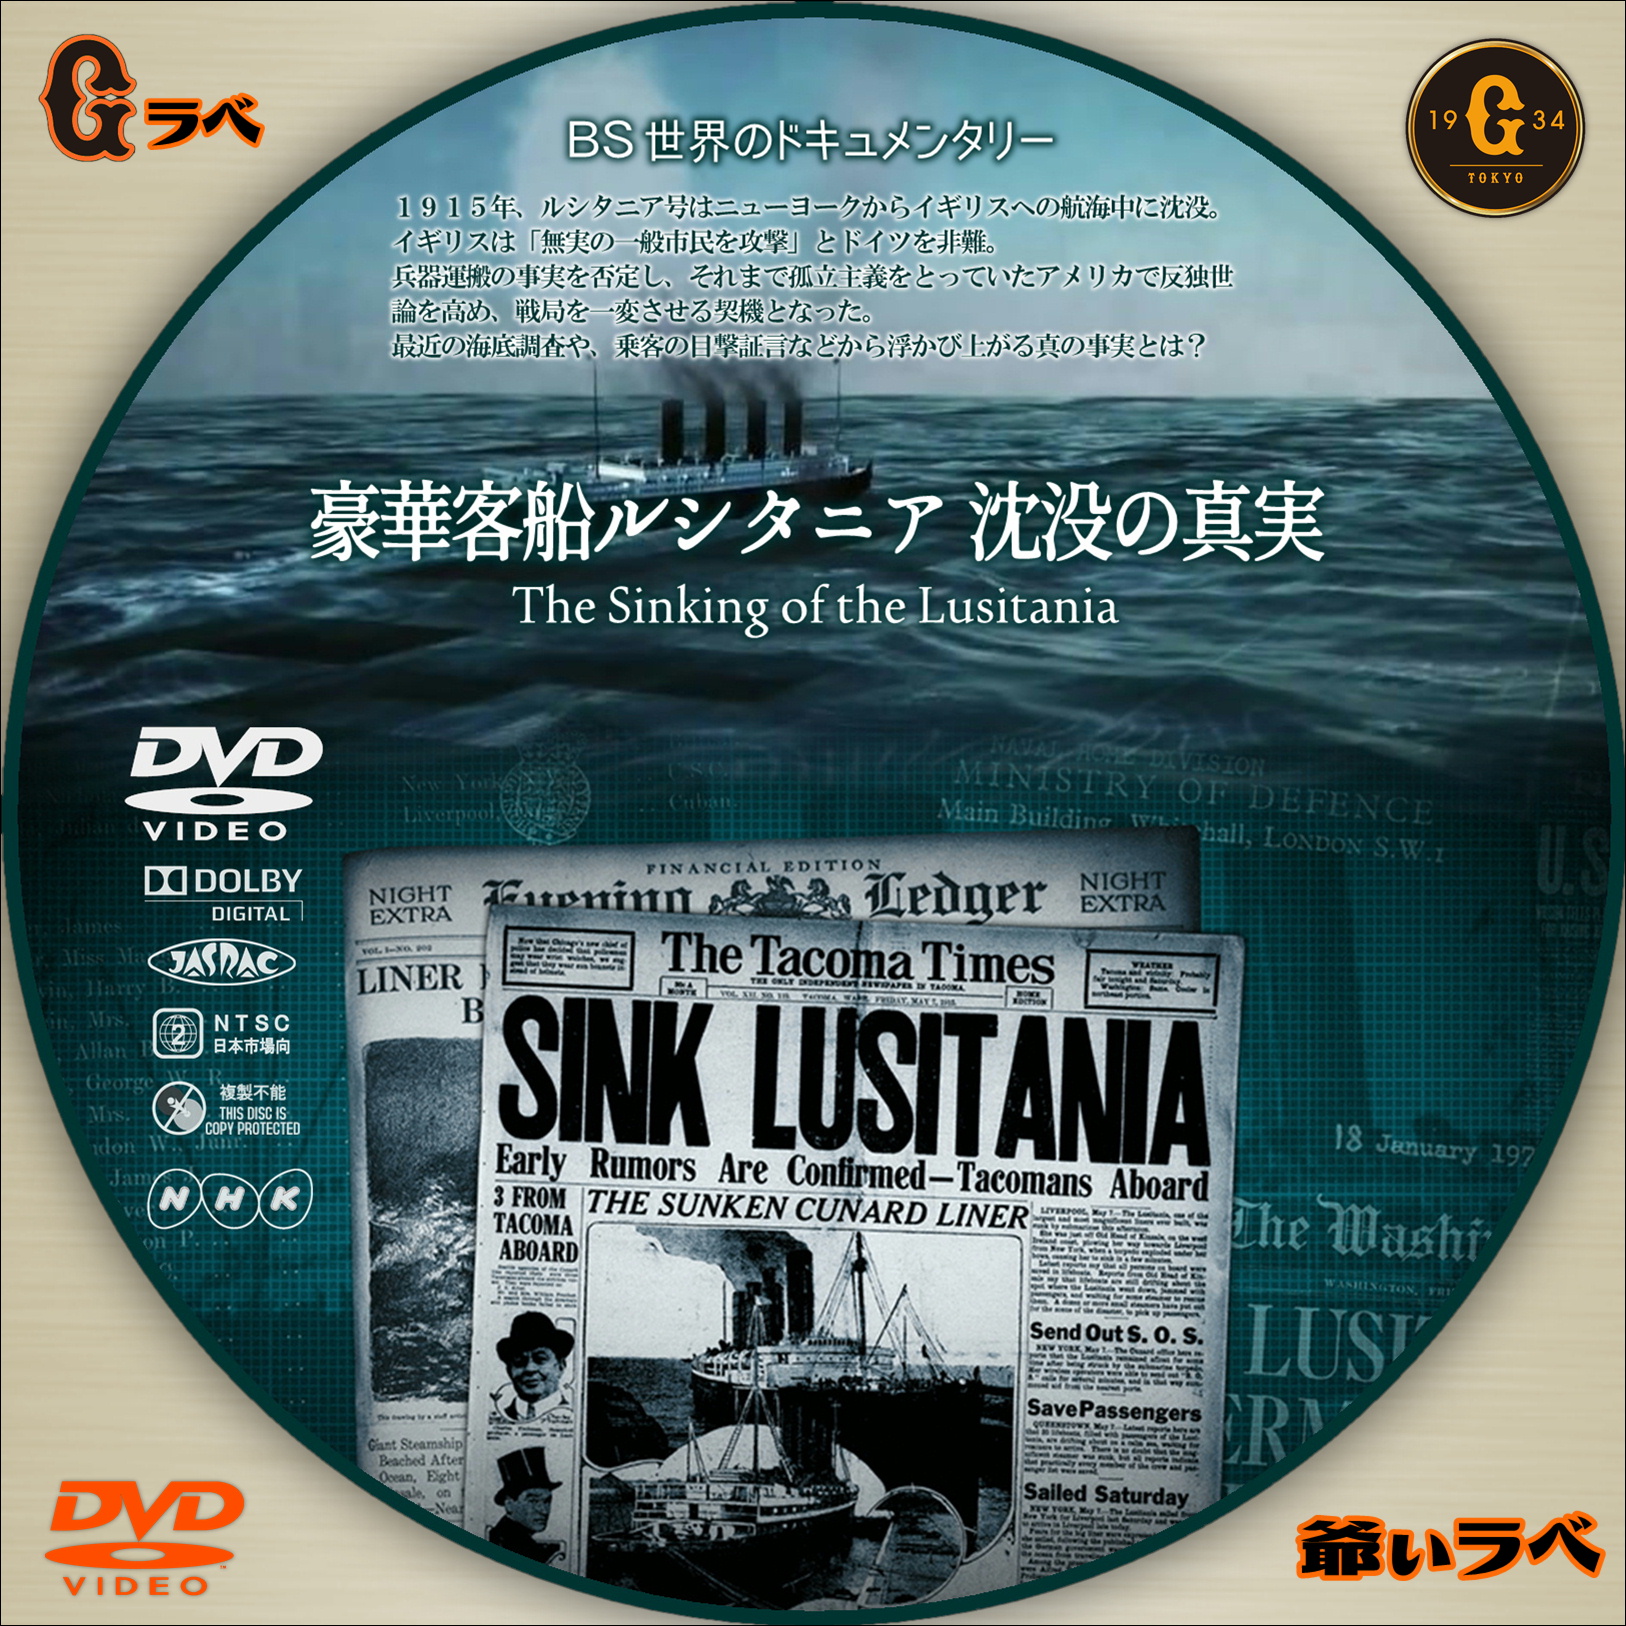 豪華客船ルシタニア 沈没の真実（DVD）